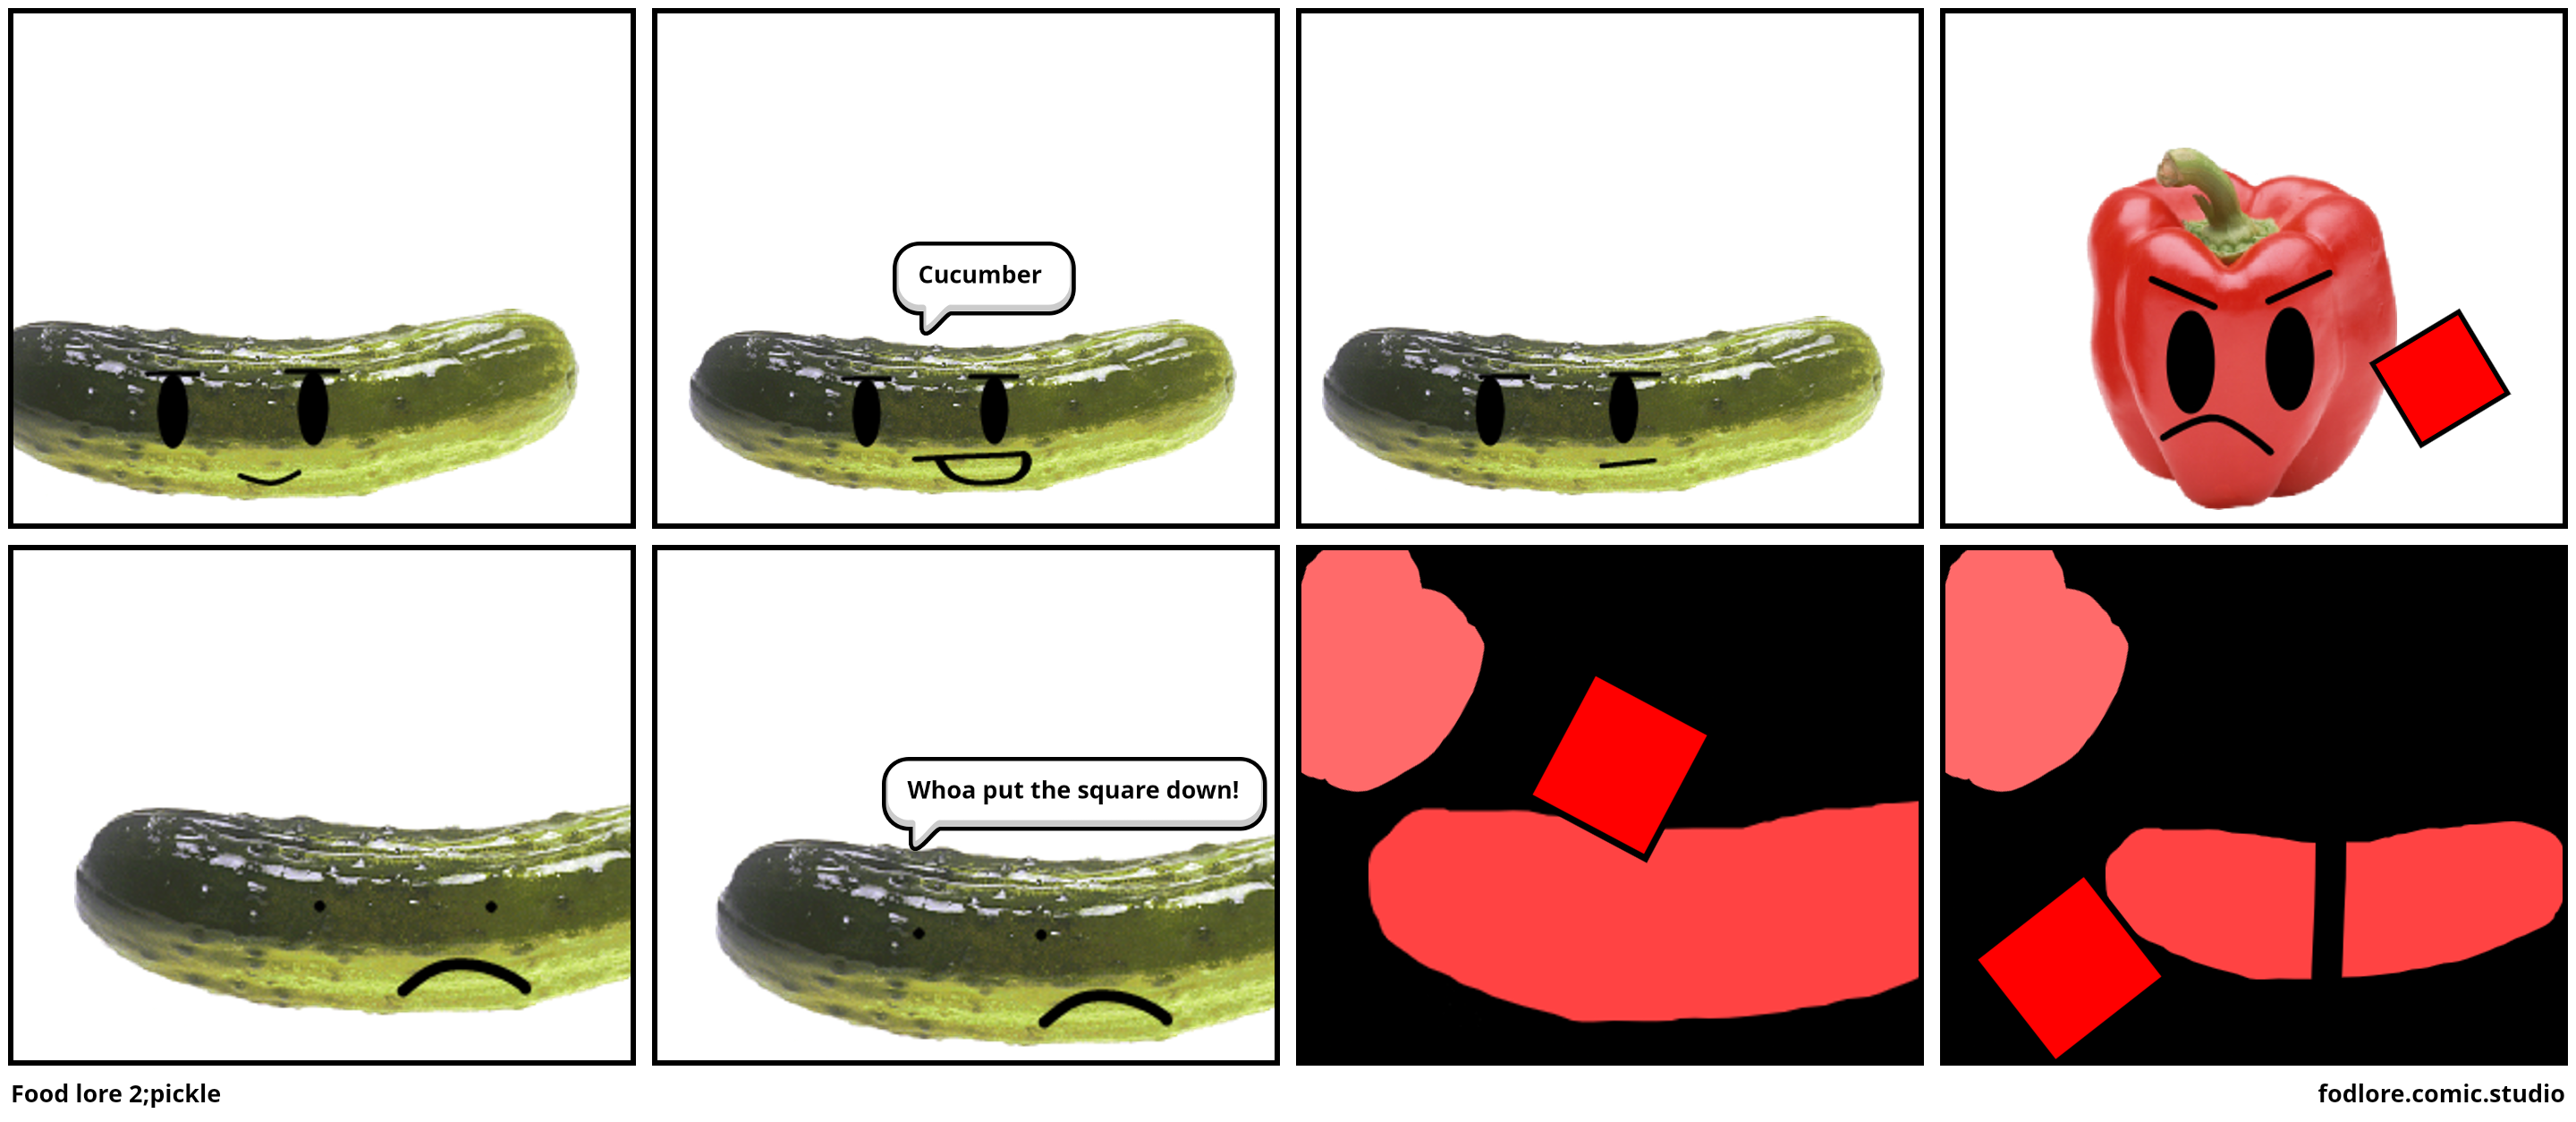 Food lore 2;pickle